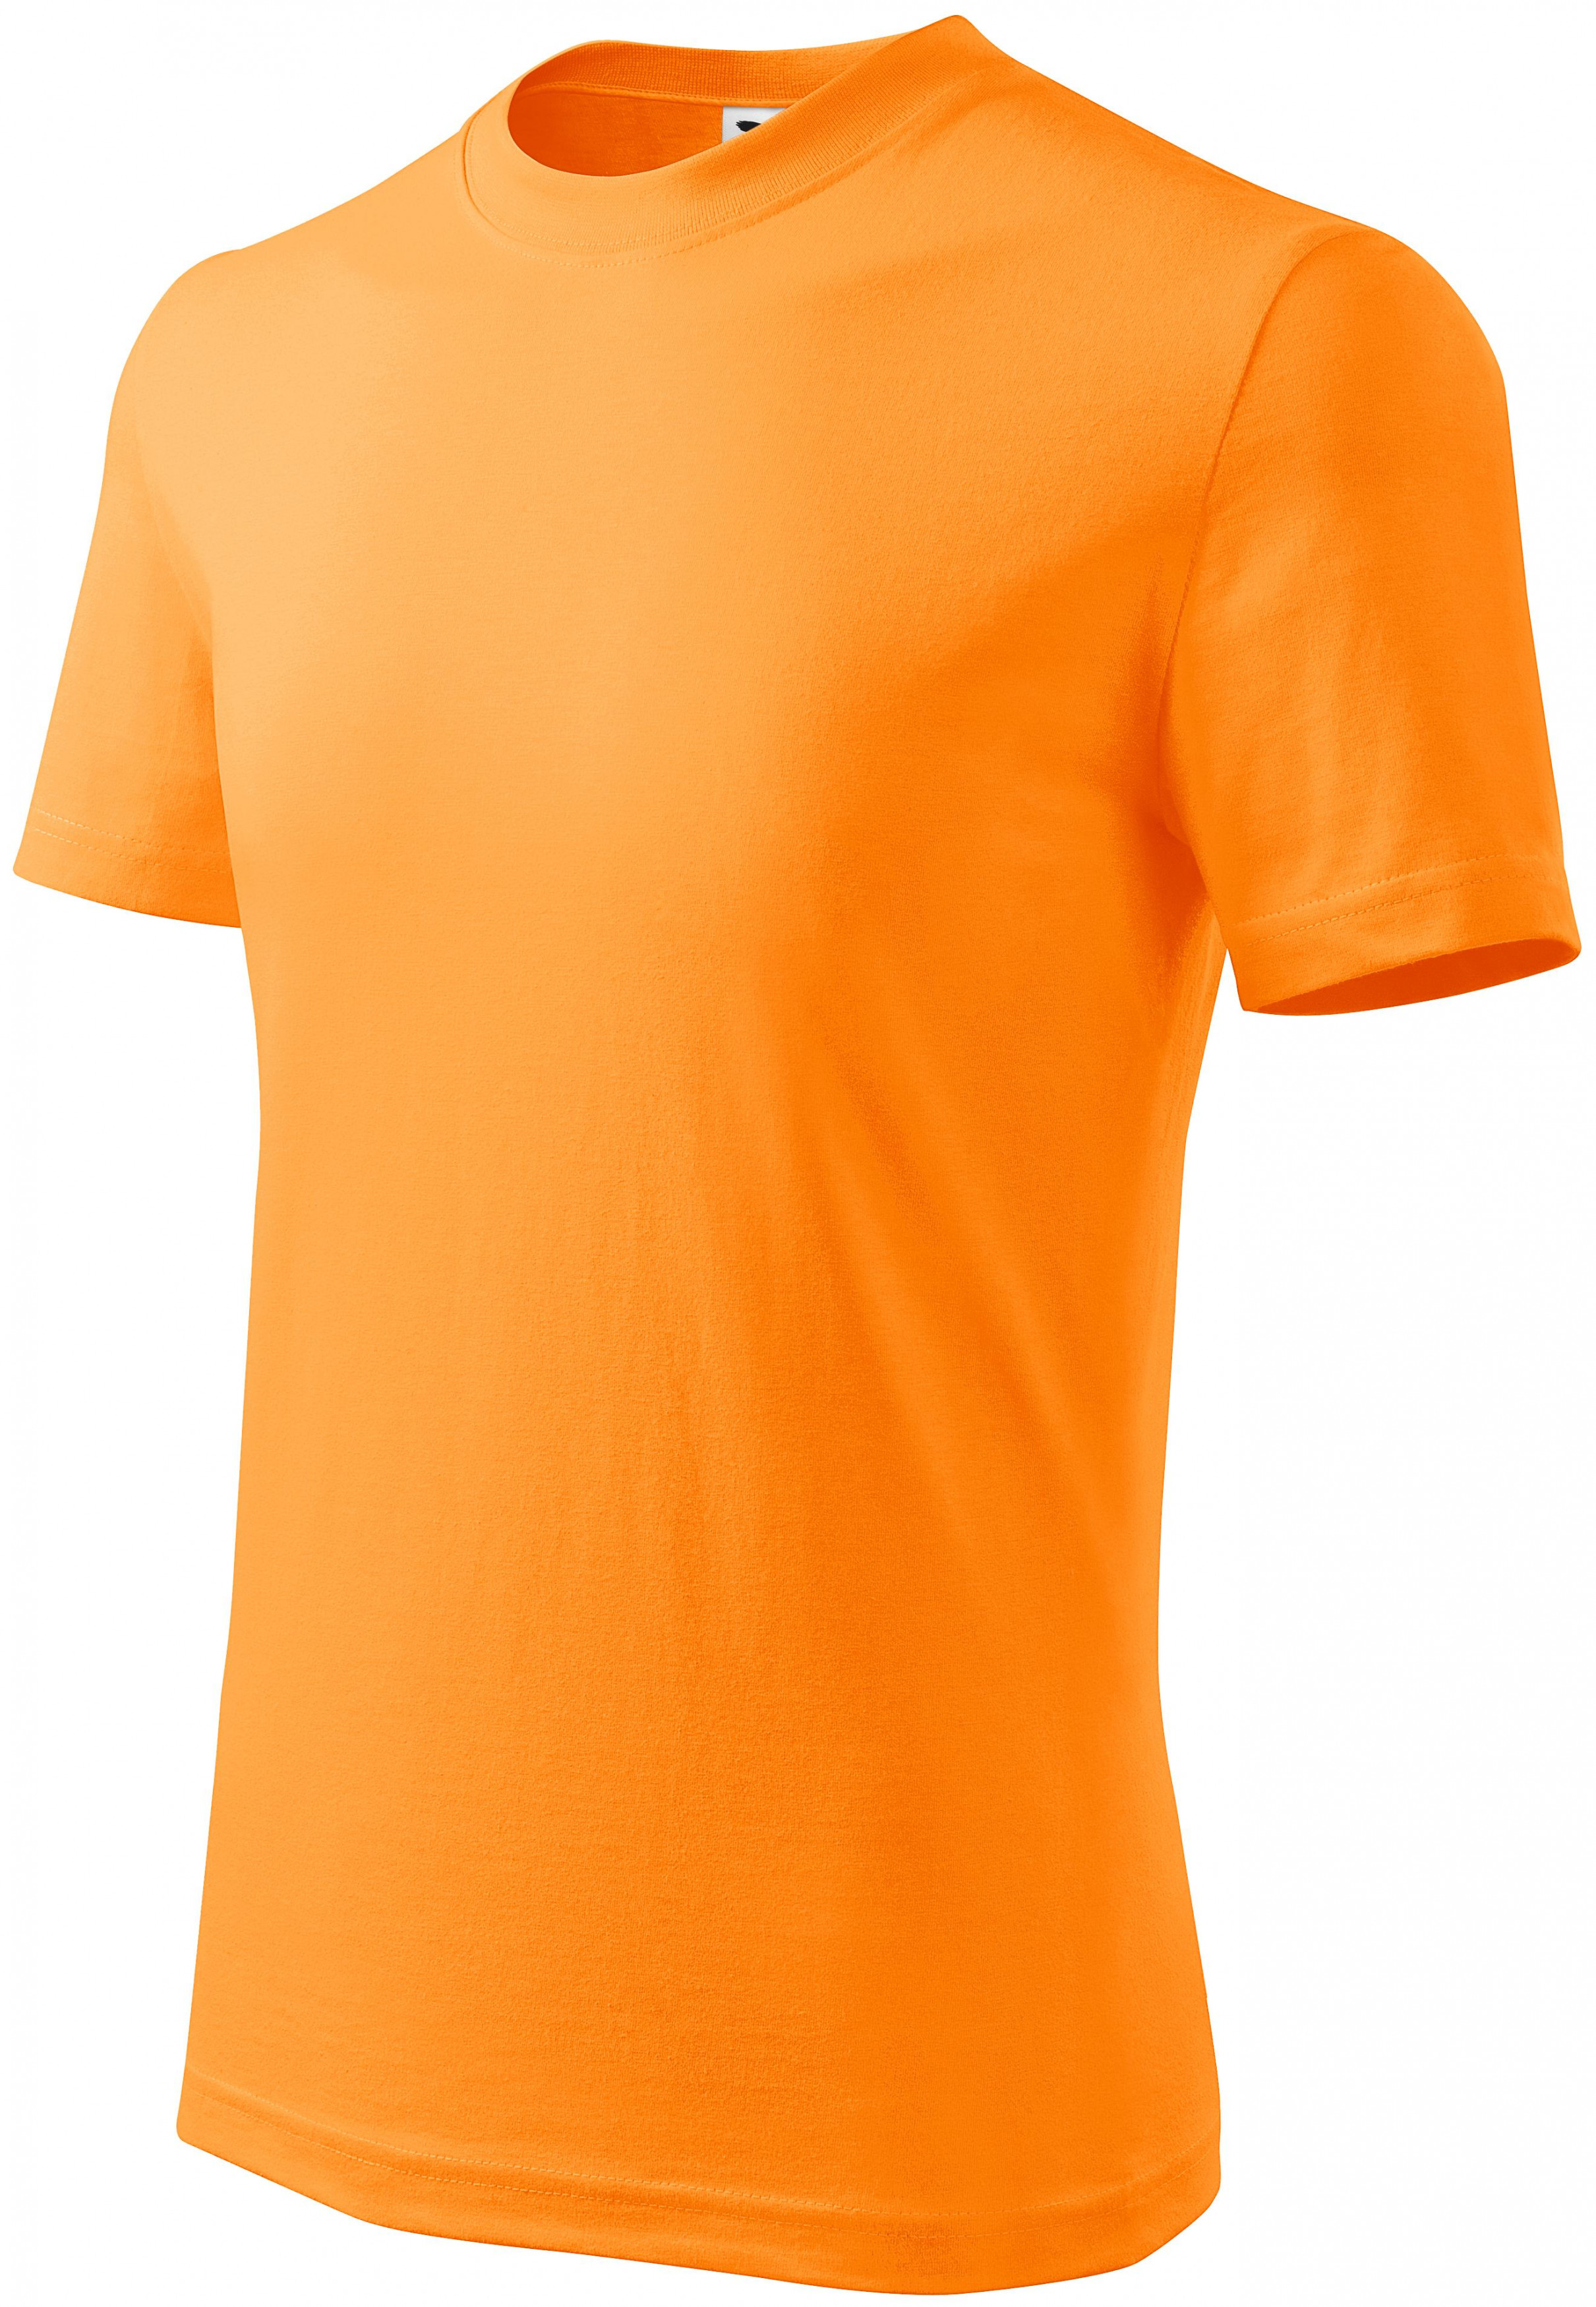 Detské tričko jednoduché, mandarínková oranžová, 158cm / 12rokov